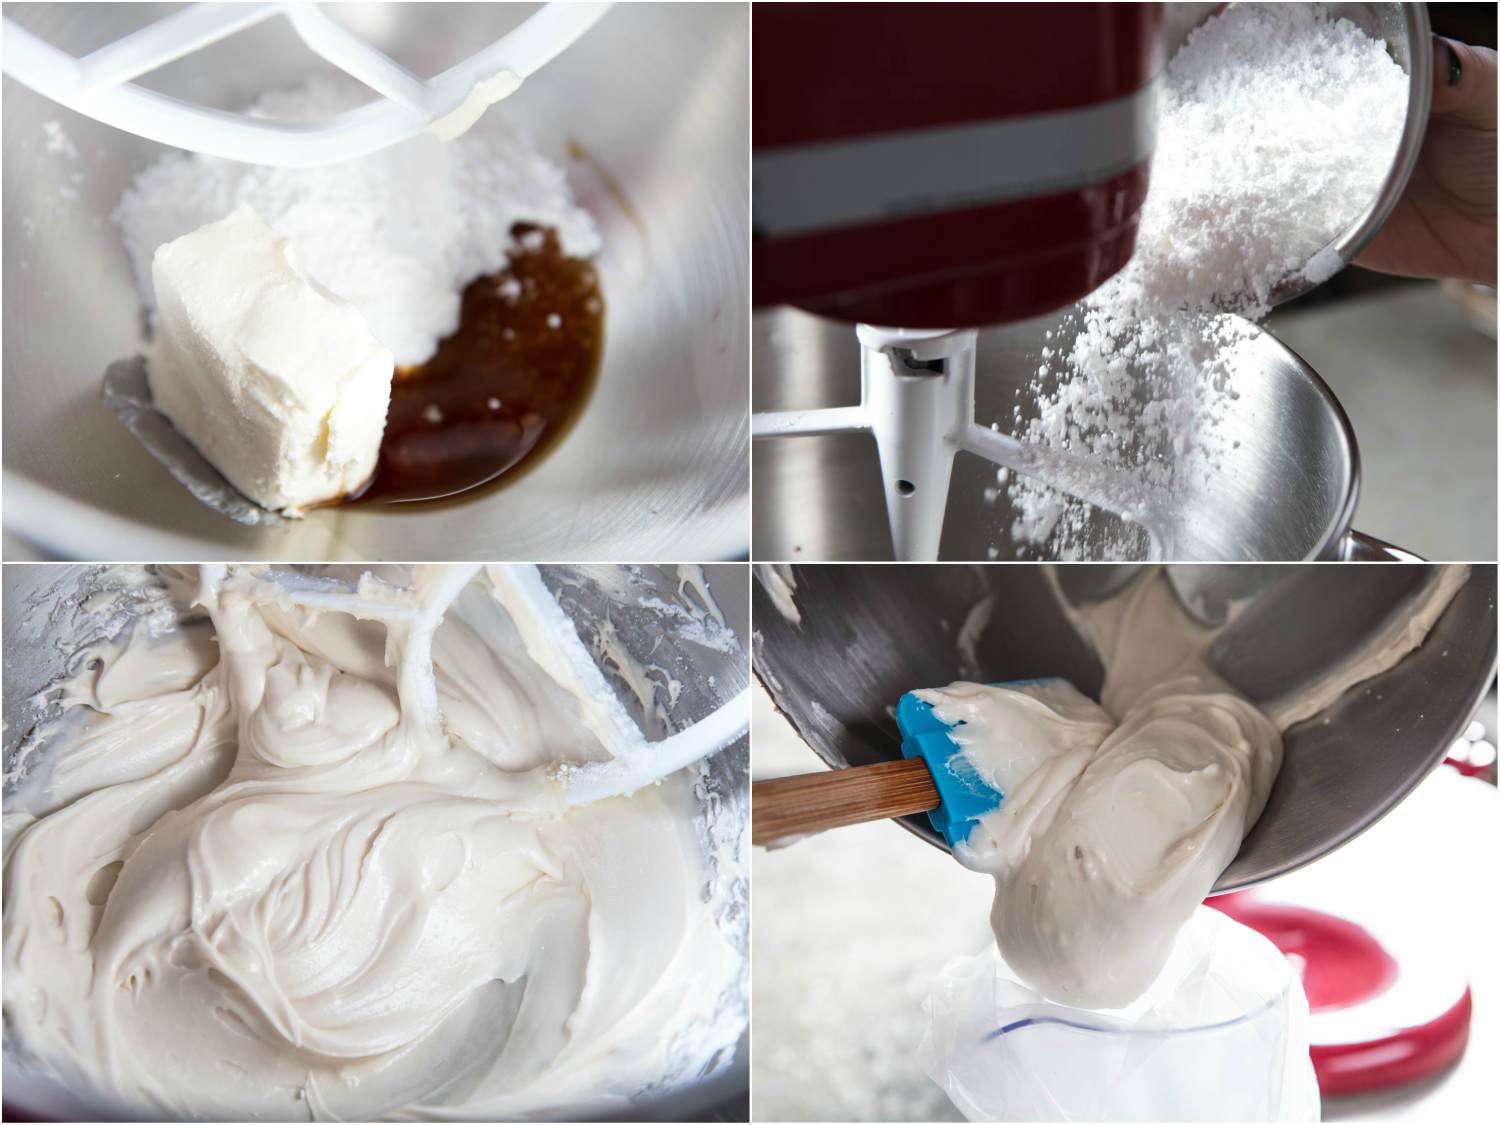 照片显示，乳胶的乳胶，在奶油蛋糕上，奶油奶油奶油奶油奶油奶油和奶油布丁。